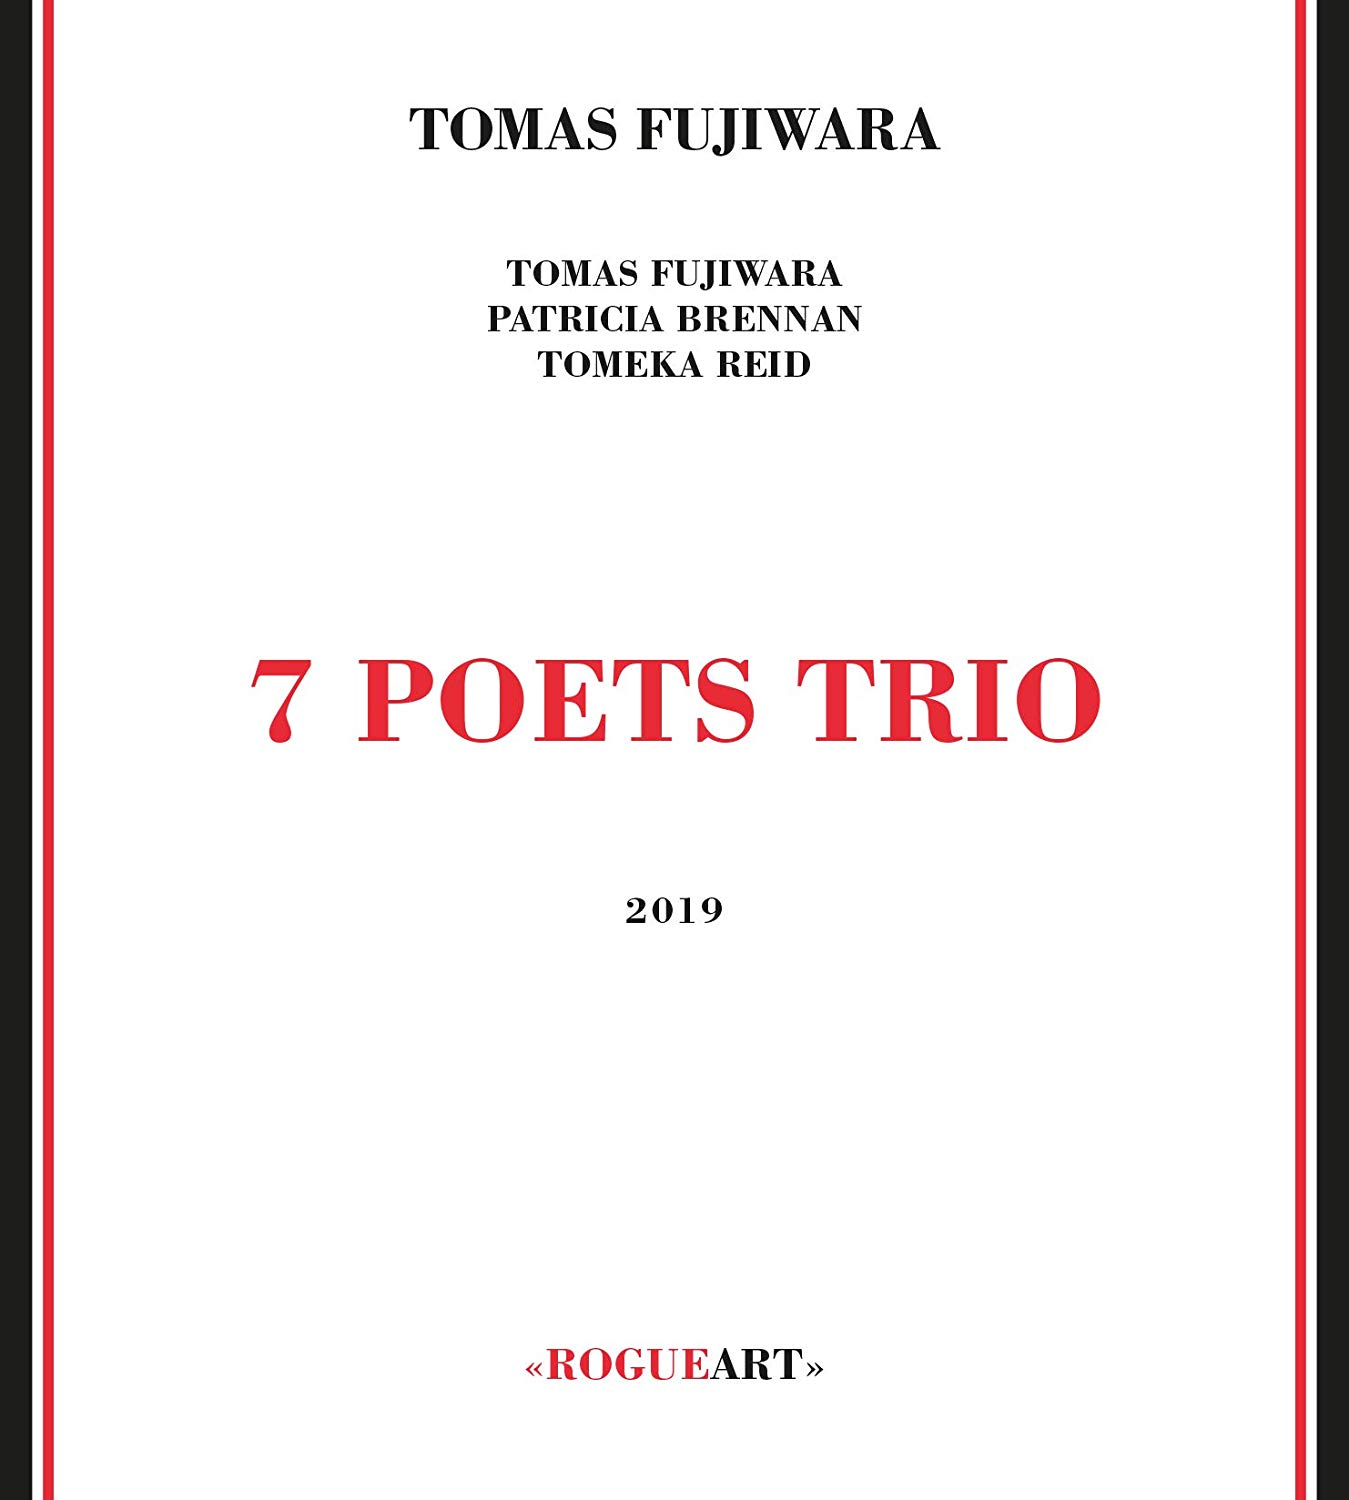 TOMAS FUJIWARA - 7 Poets Trio cover 